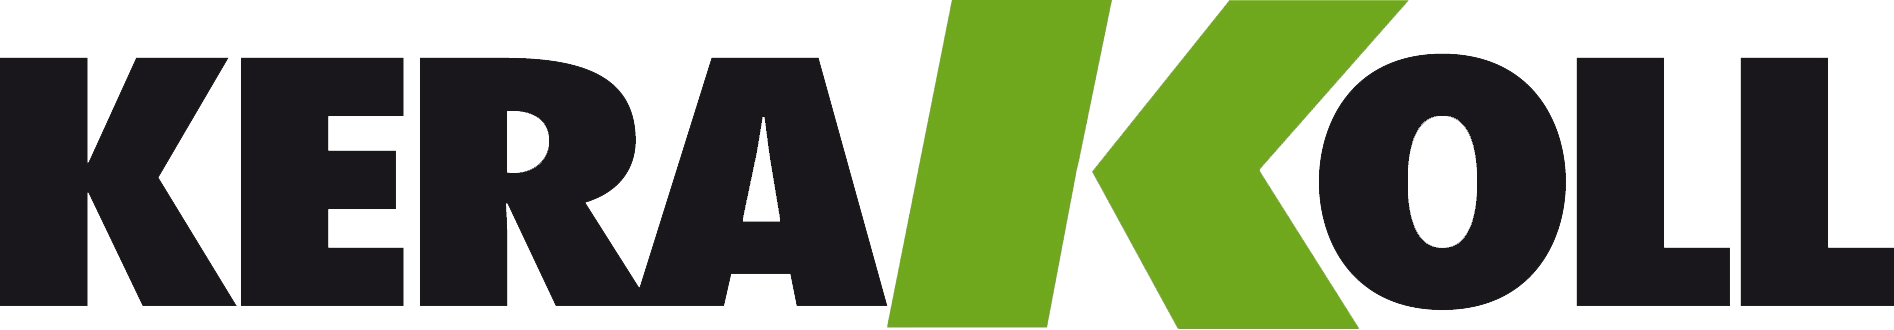 kerakoll logo